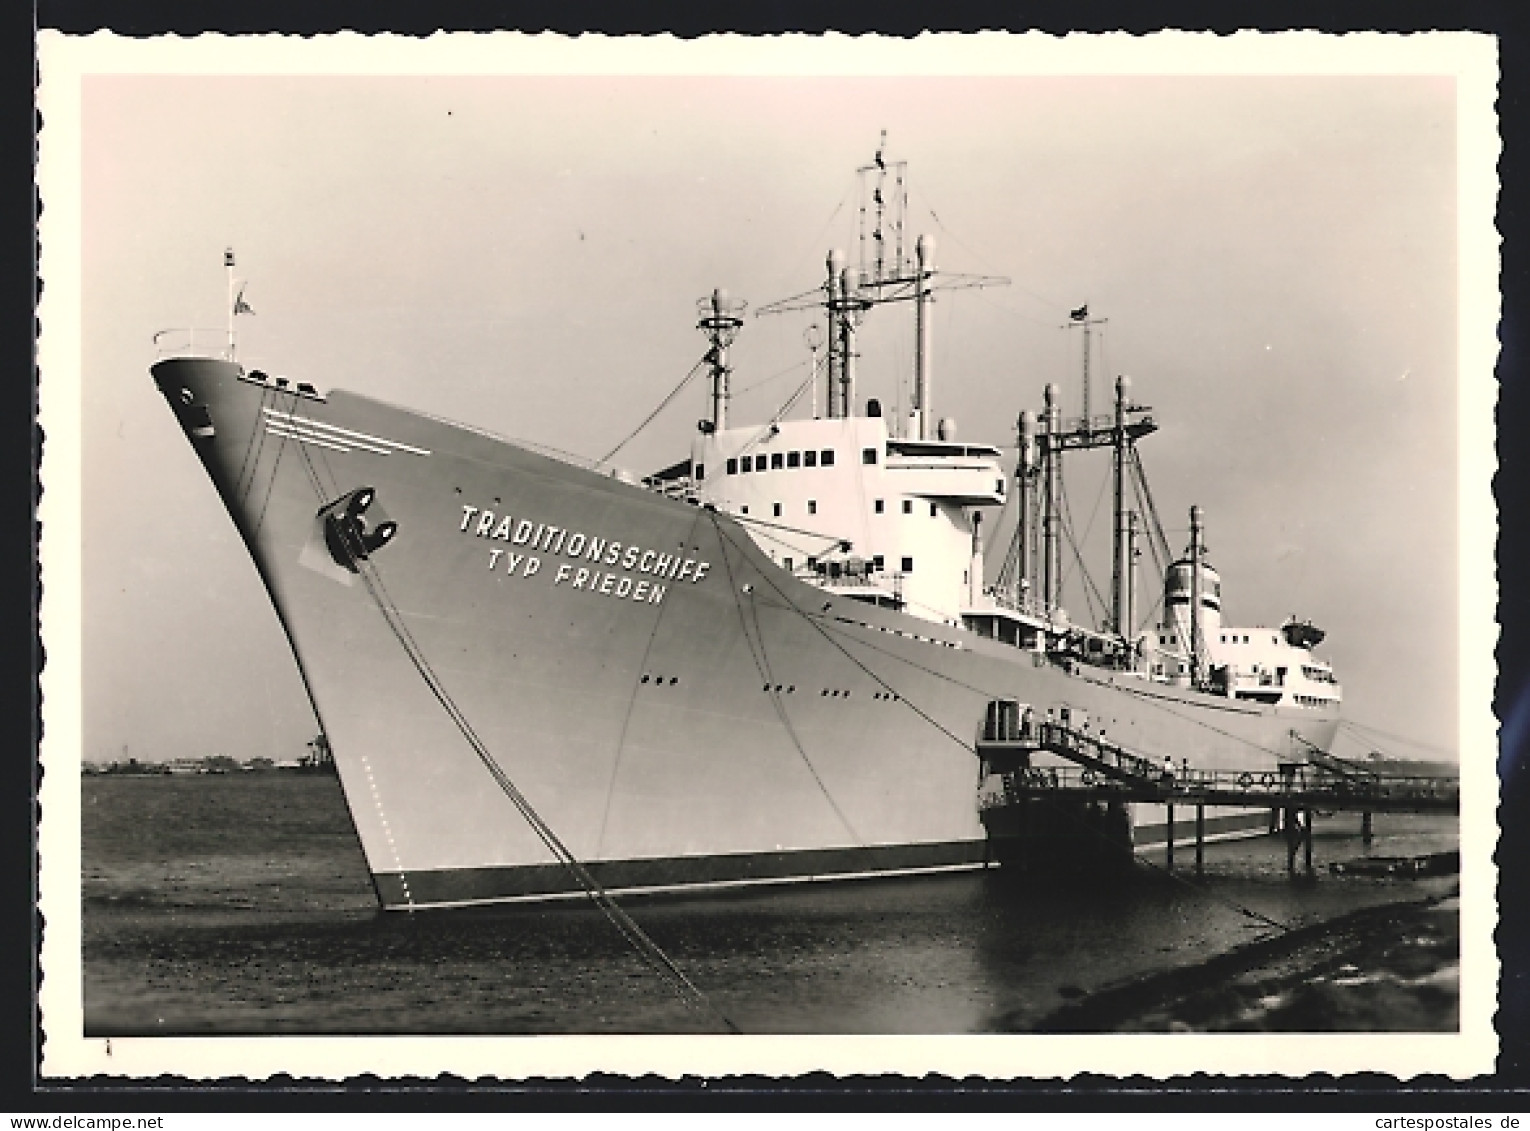 AK Warnemünde, Traditionsschiff Typ Frieden  - Passagiersschepen